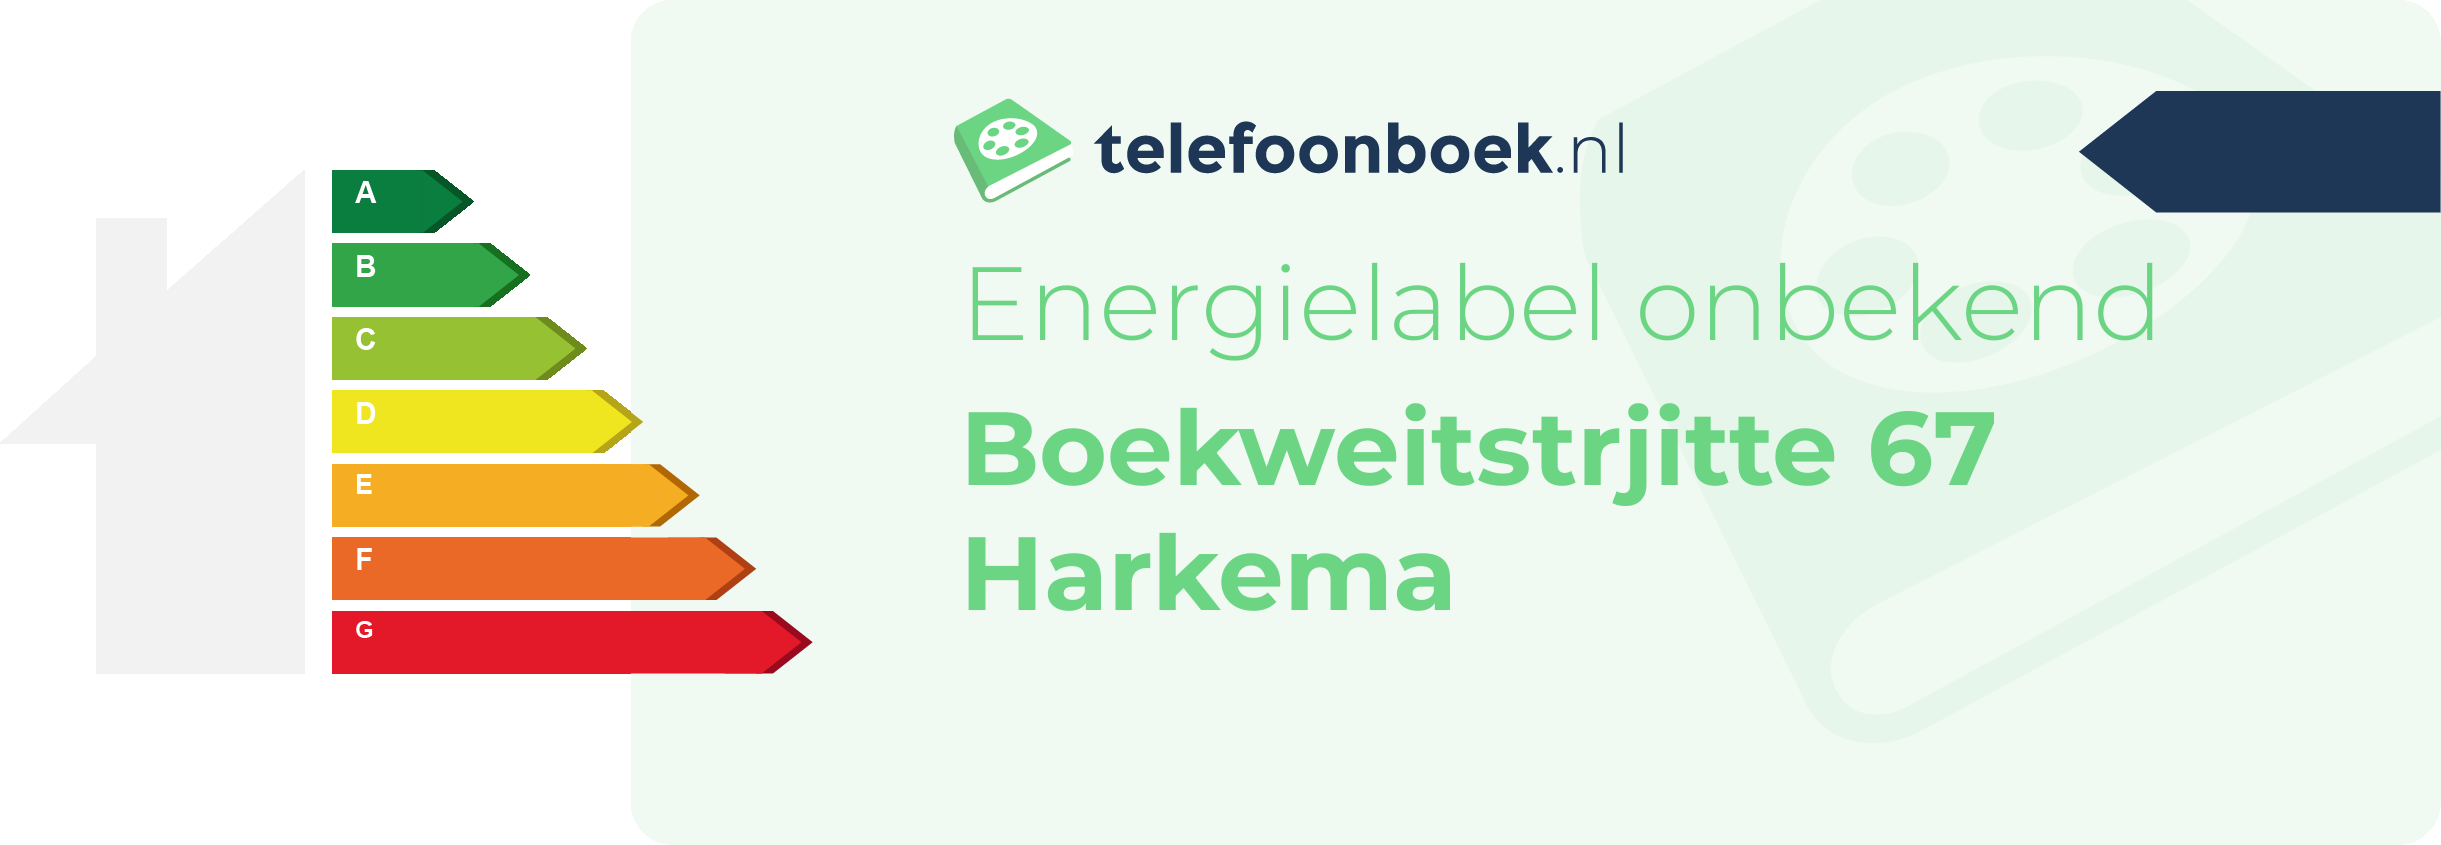 Energielabel Boekweitstrjitte 67 Harkema